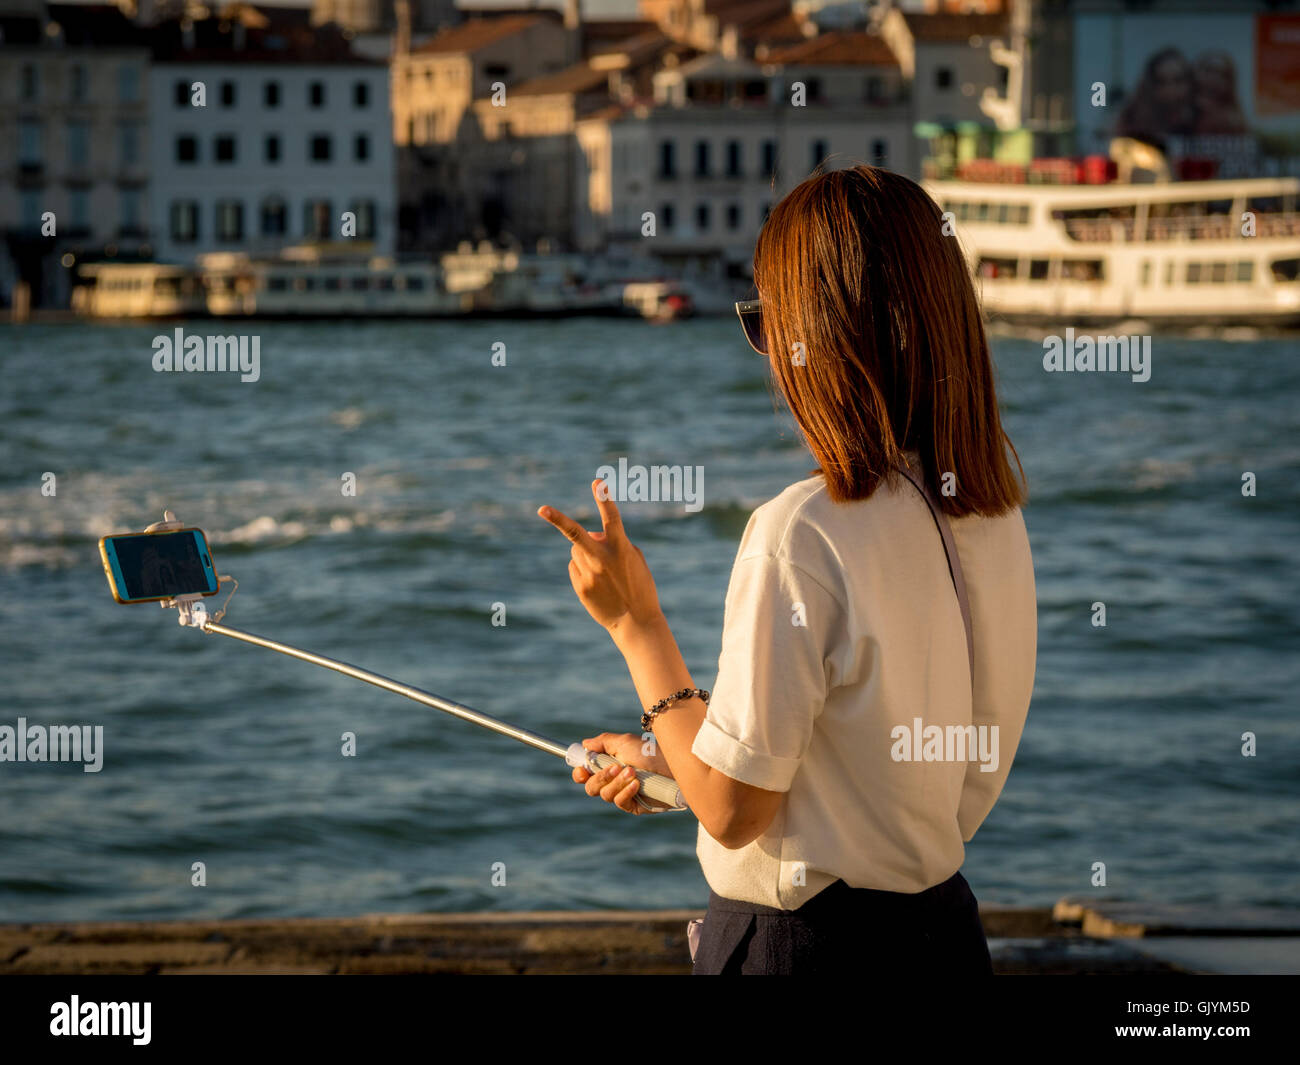 Les jeunes femelles adultes asiatiques de prendre un touriste, à l'aide d'un selfies stick selfies ; rendre le signe V avec ses doigts. Venise, Italie. Banque D'Images